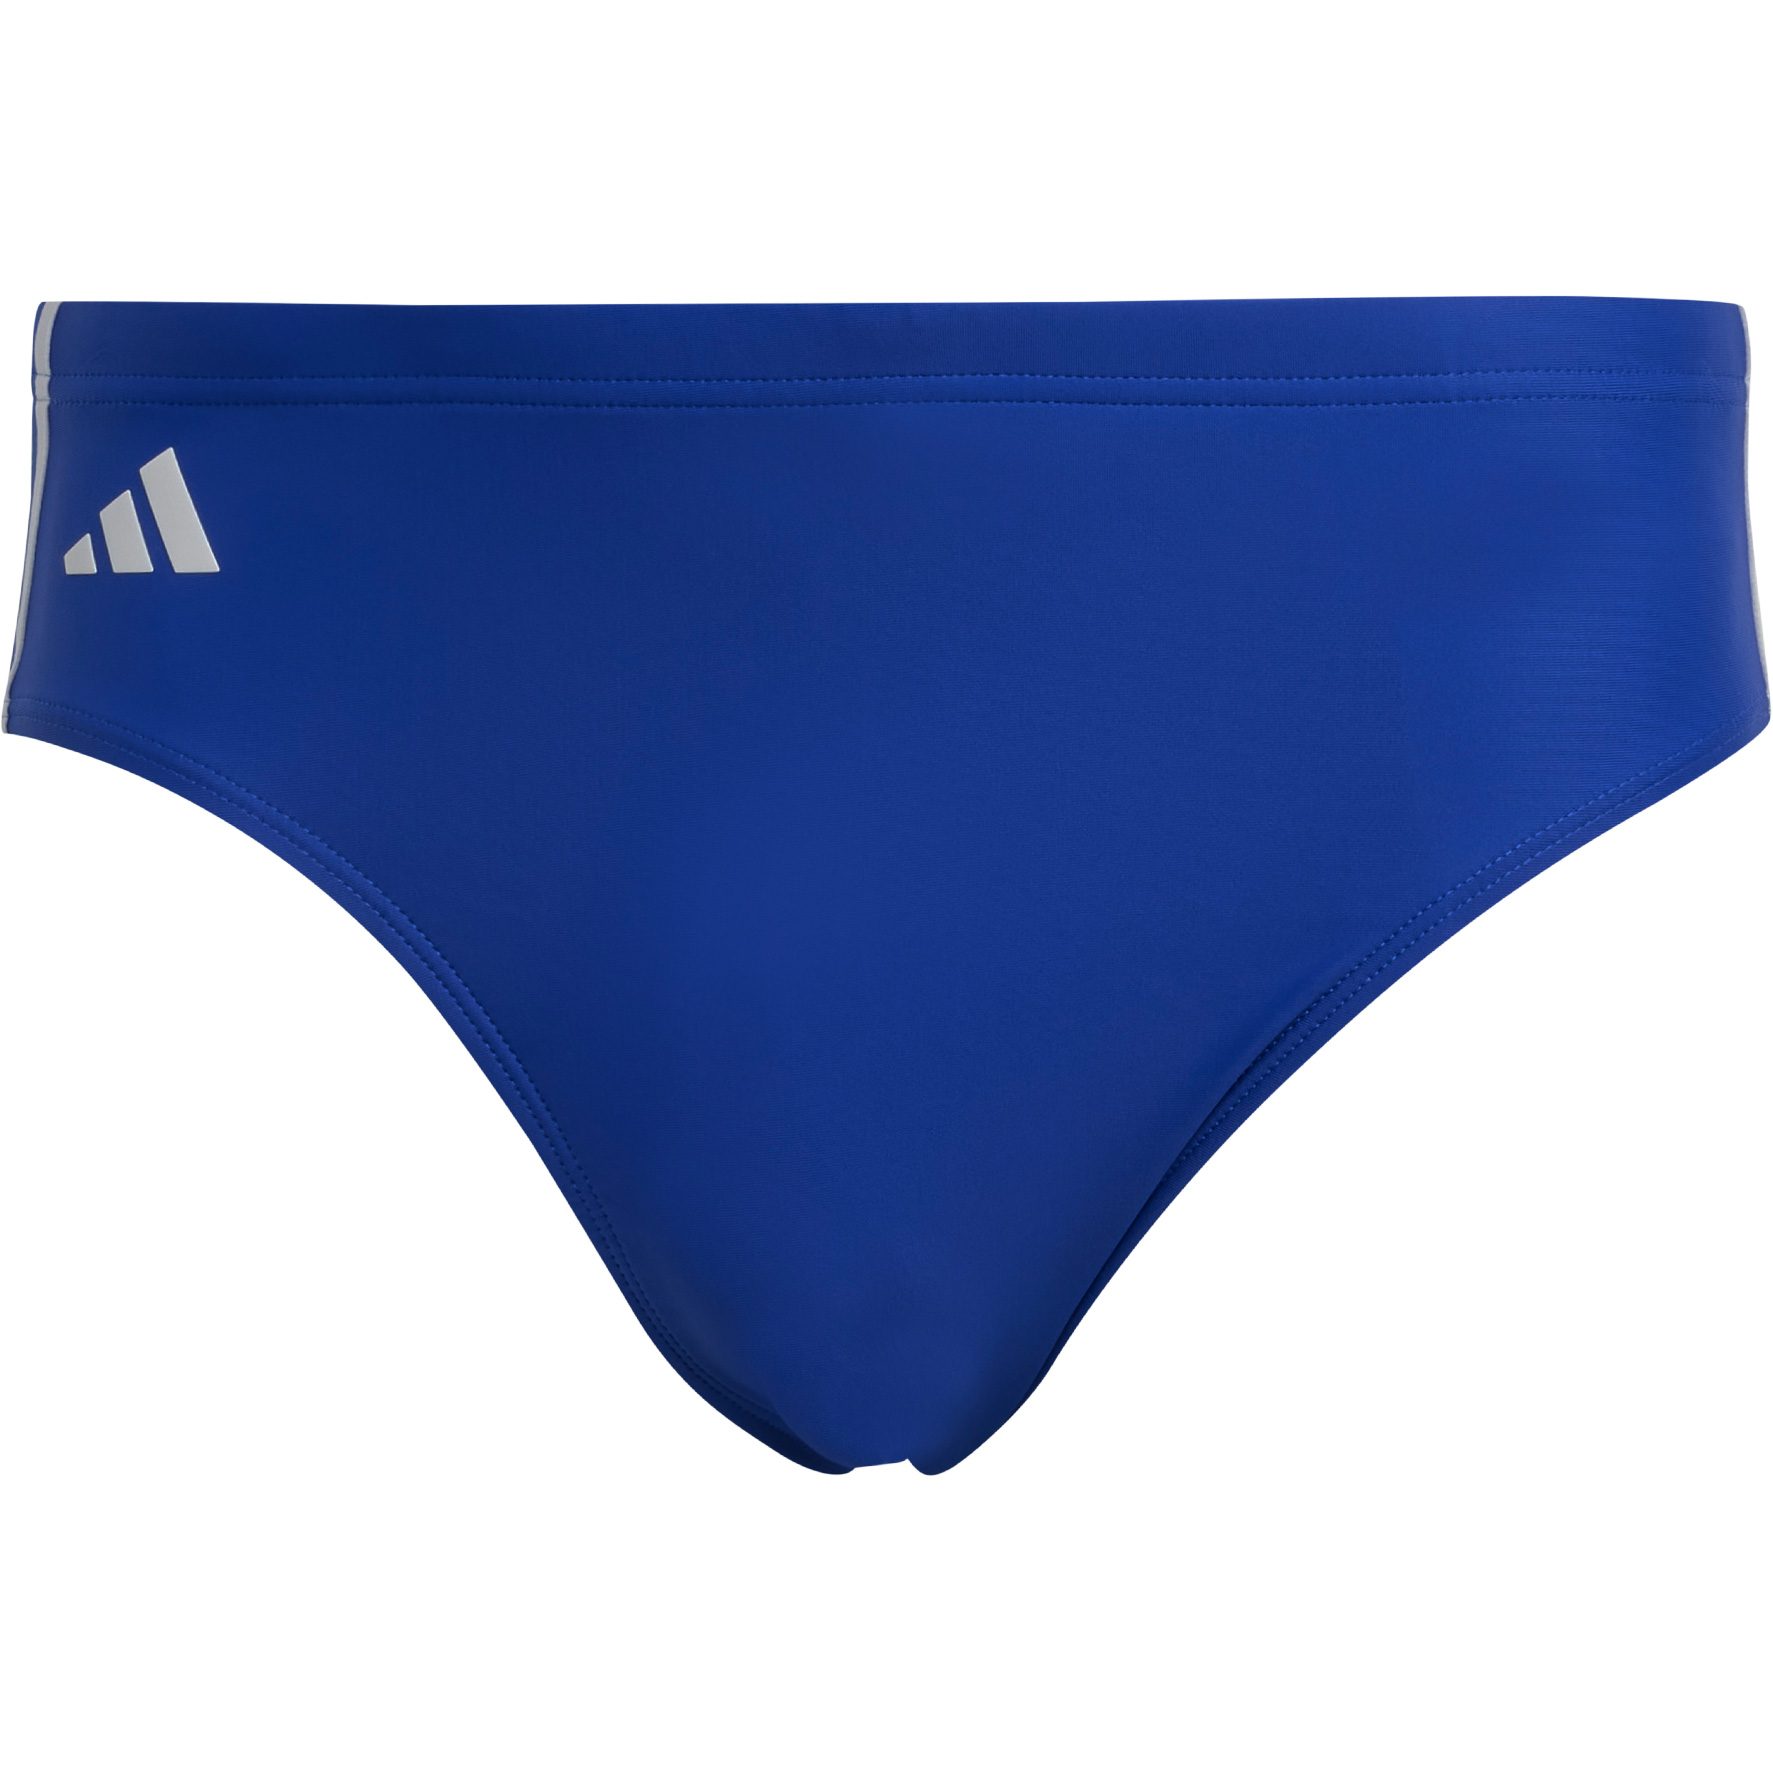 adidas Classic 3-Stripes Swim Trunks - Blue | adidas Switzerland